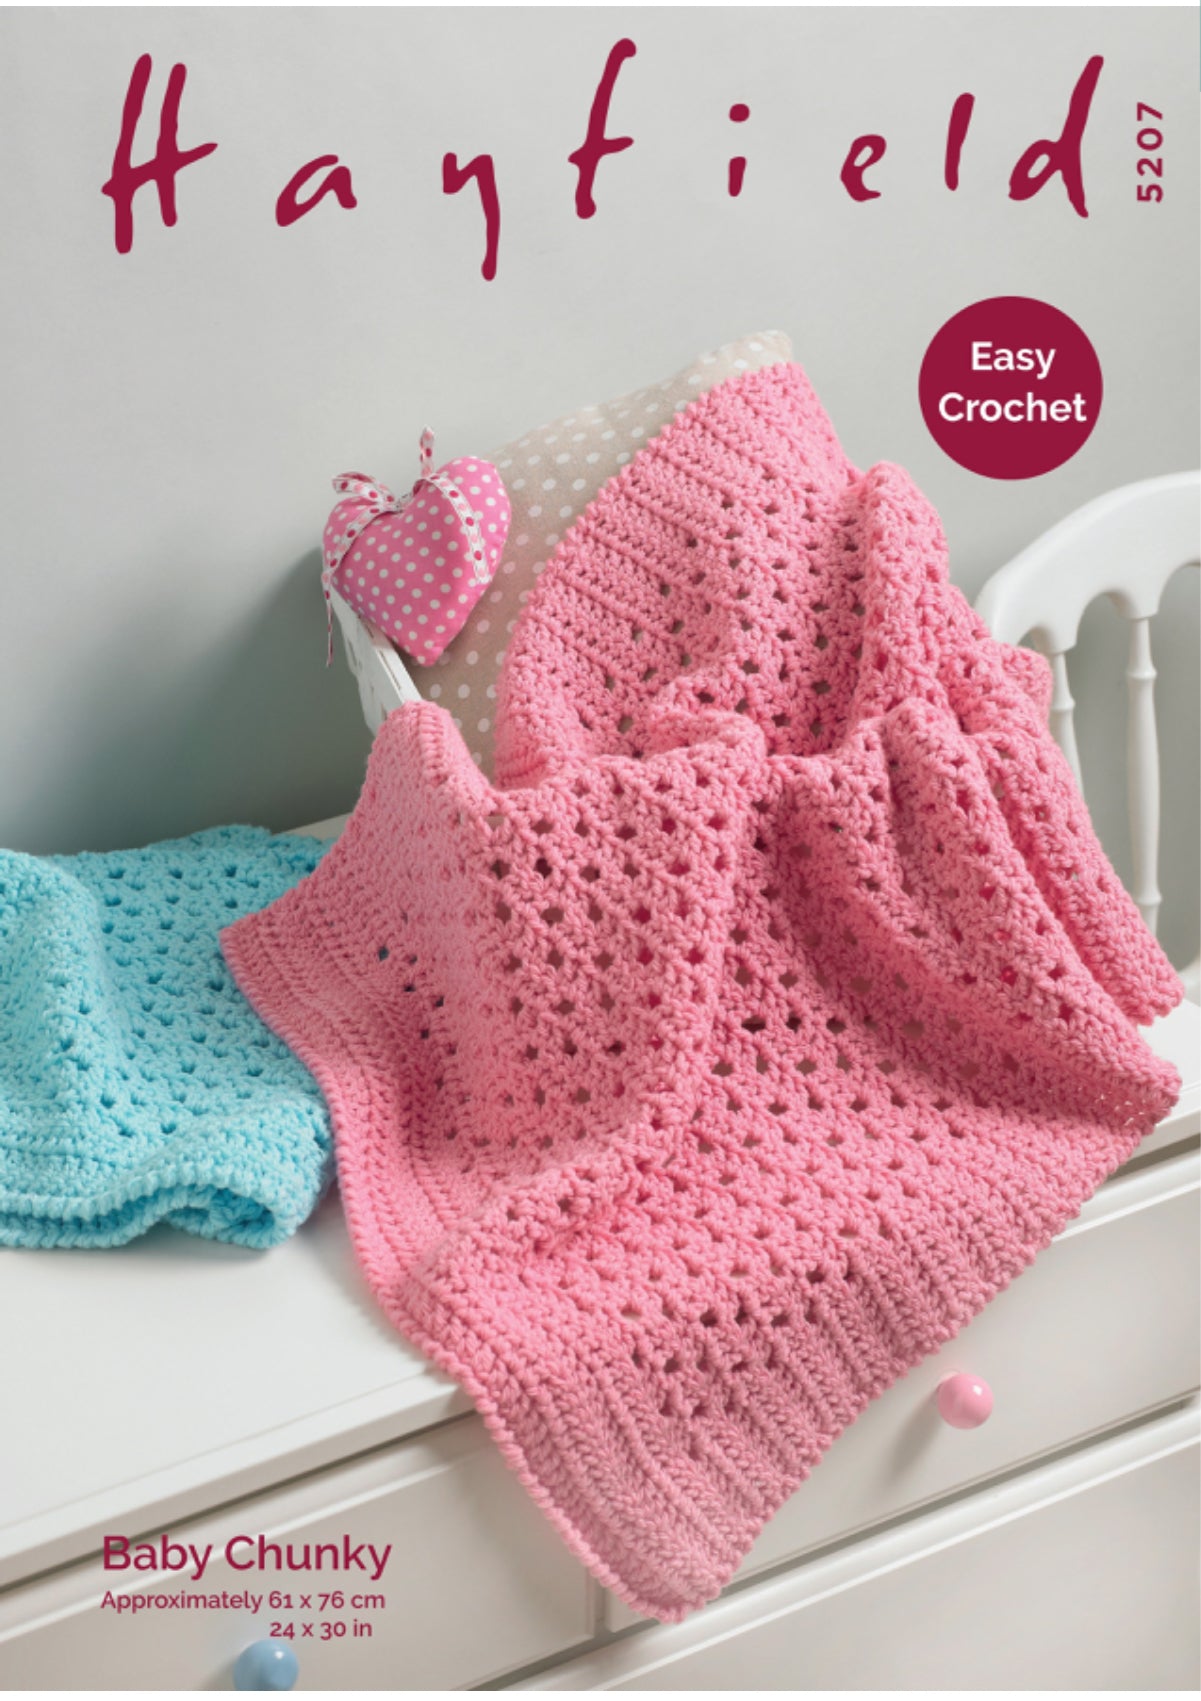 Hayfield Pattern 5207 Crochet Blanket in  Baby Chunky